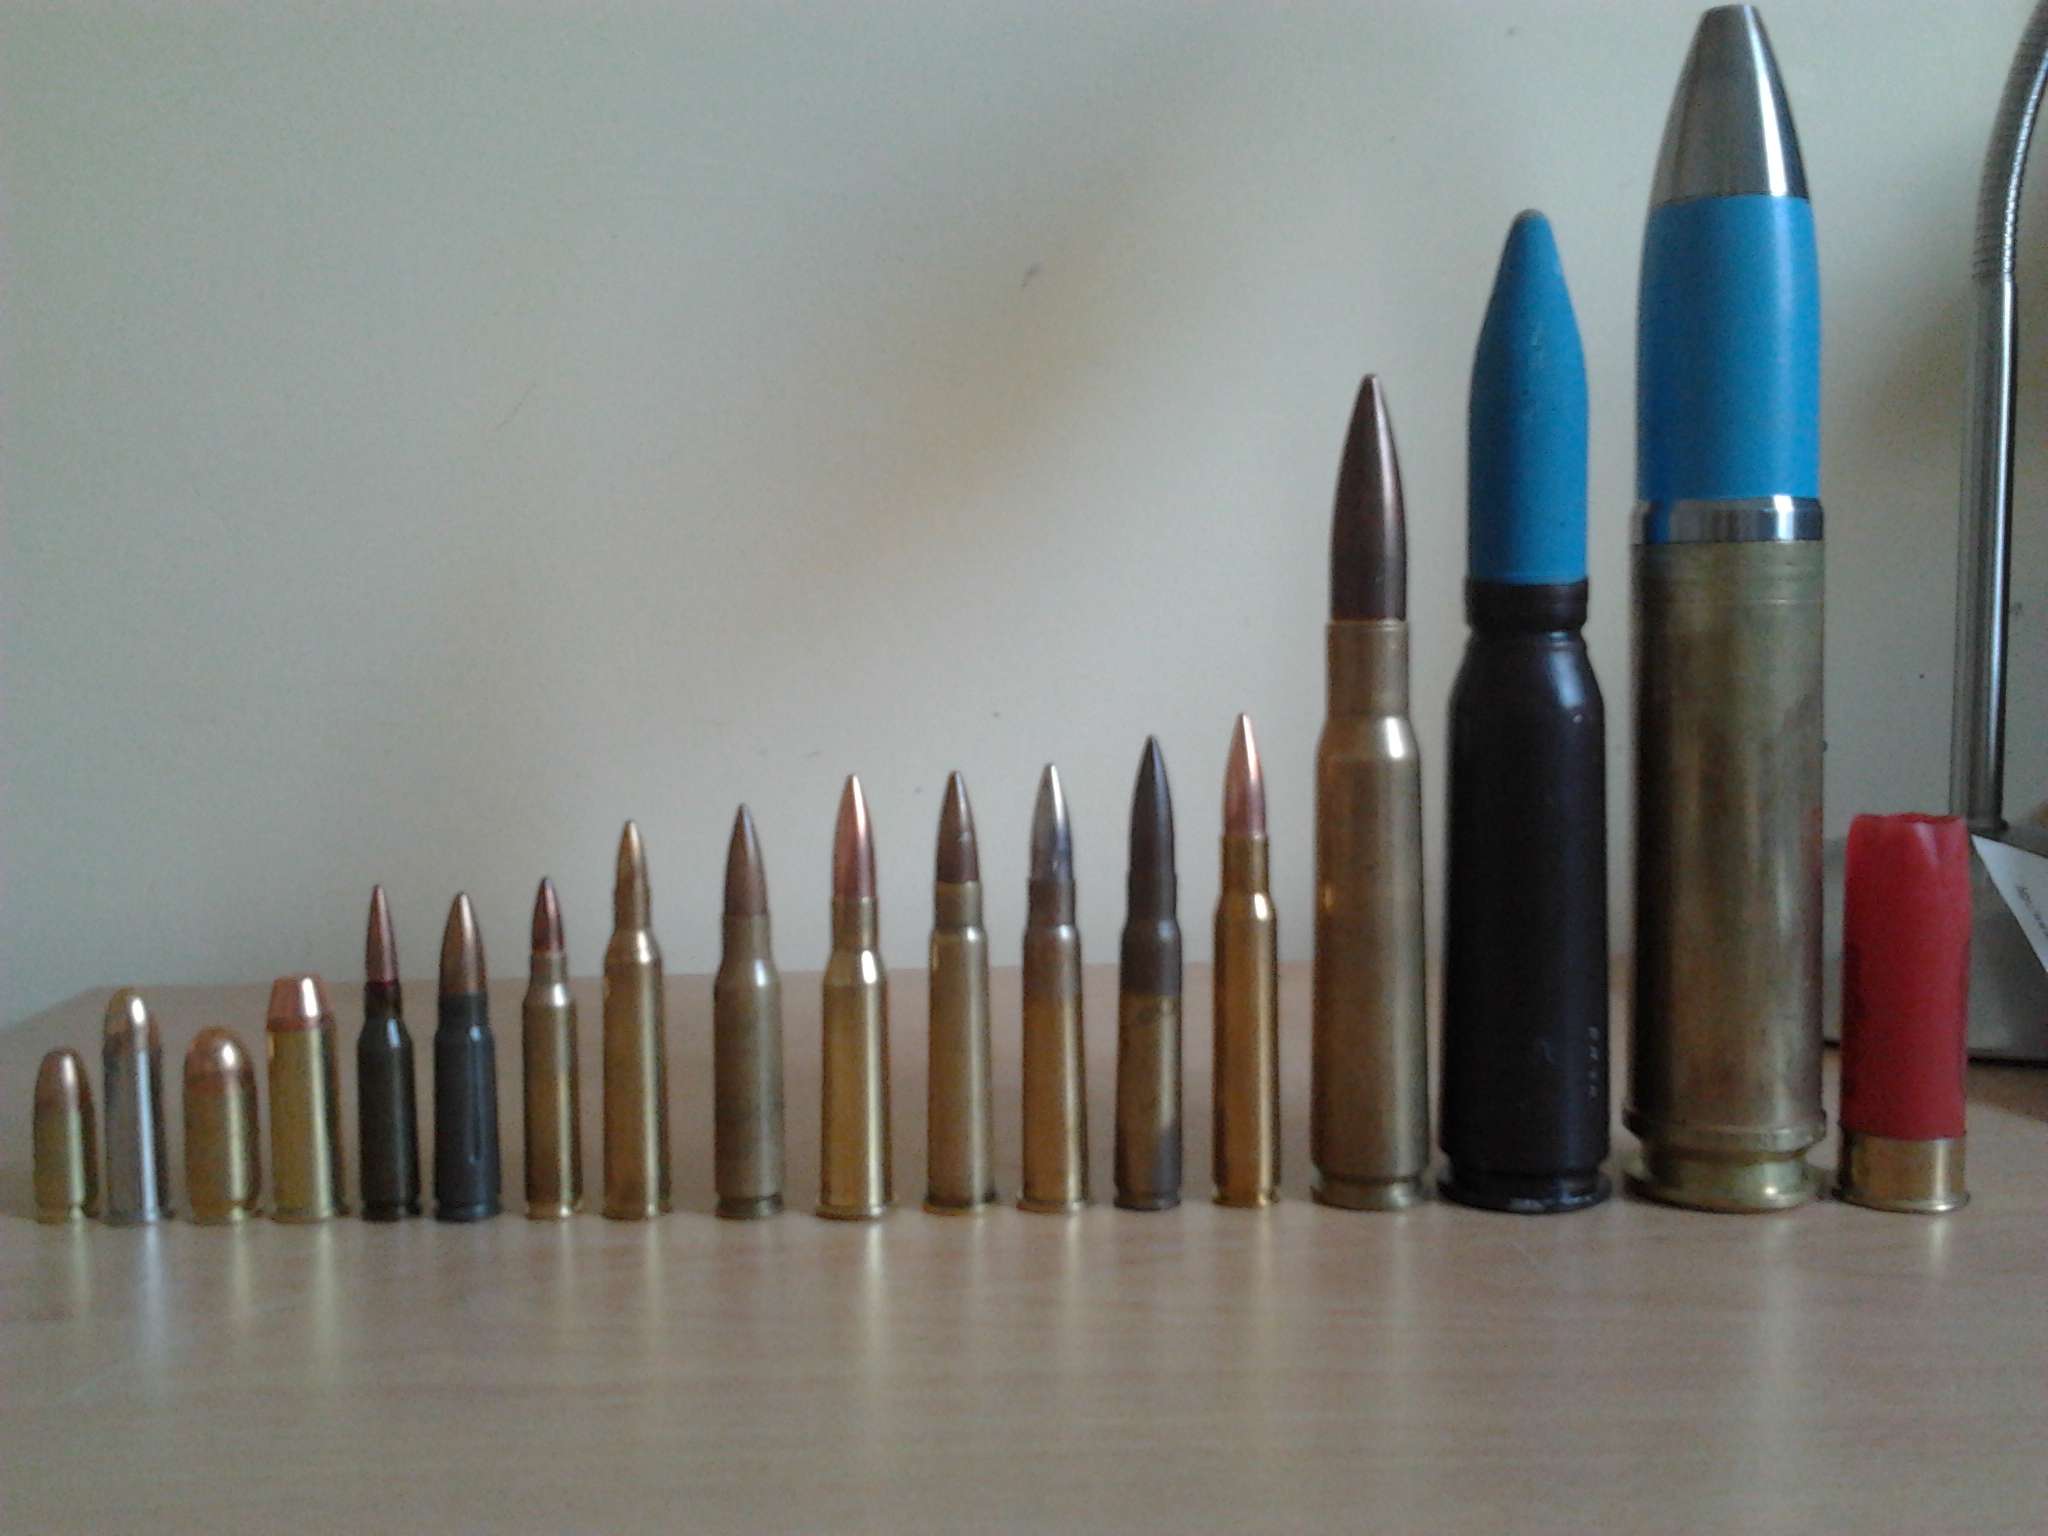 right: - 9mm parabellum - .38 special - .45 ACP - .44 Magnum - 5.45 × 39mm ...